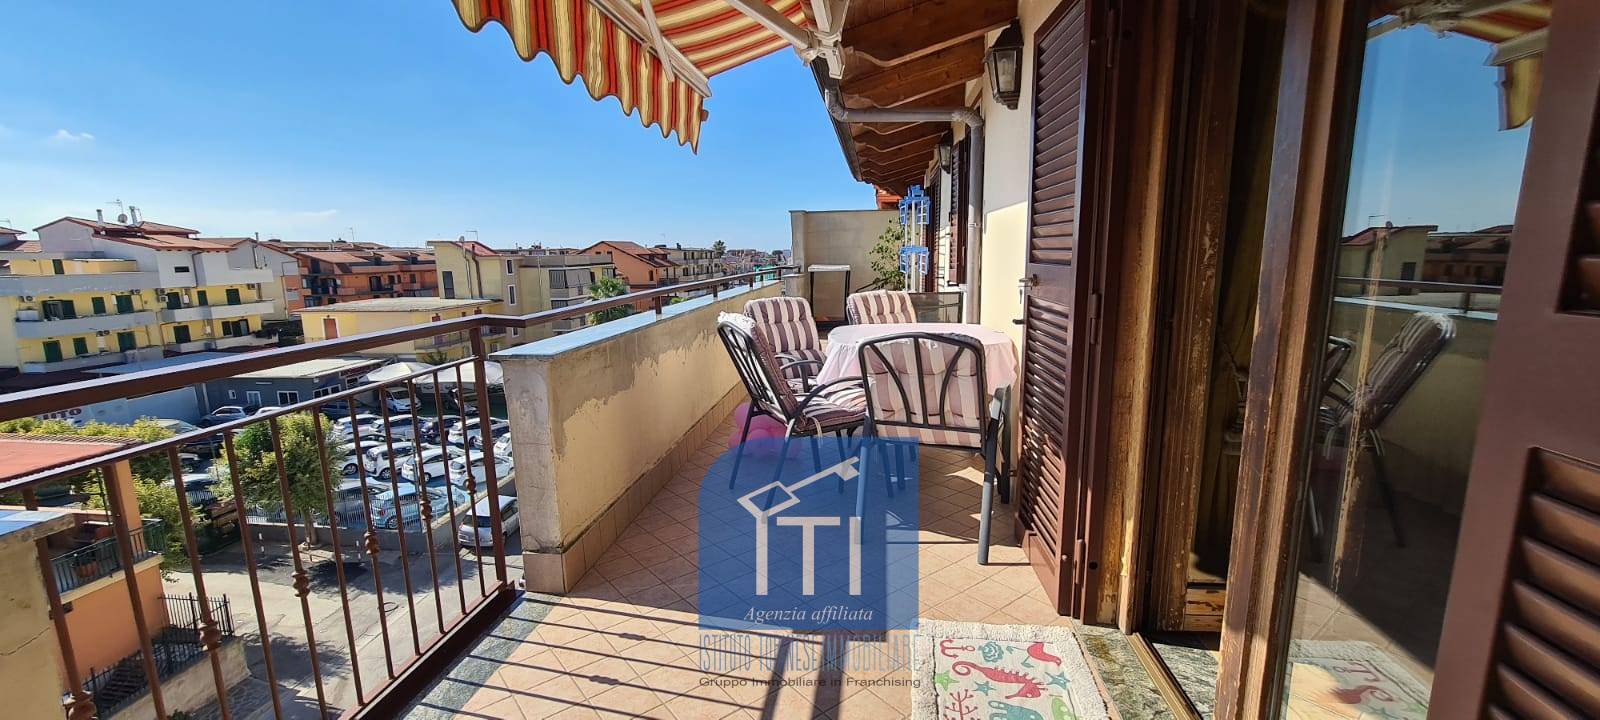 Appartamento in vendita a Giugliano in Campania, 3 locali, prezzo € 129.000 | PortaleAgenzieImmobiliari.it